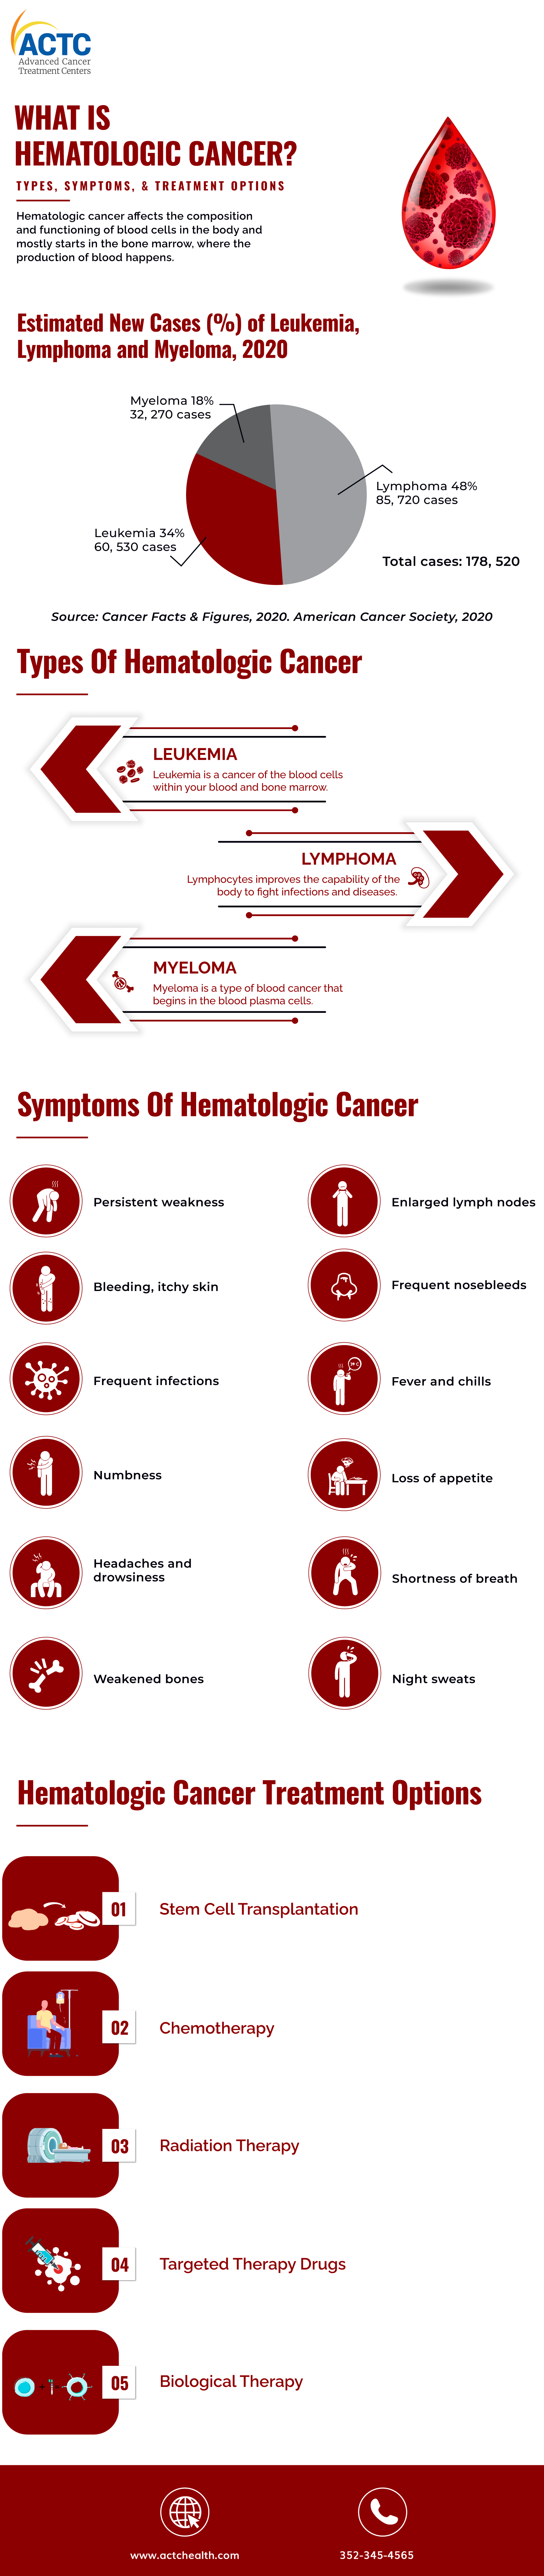 Hematologic-Cancer